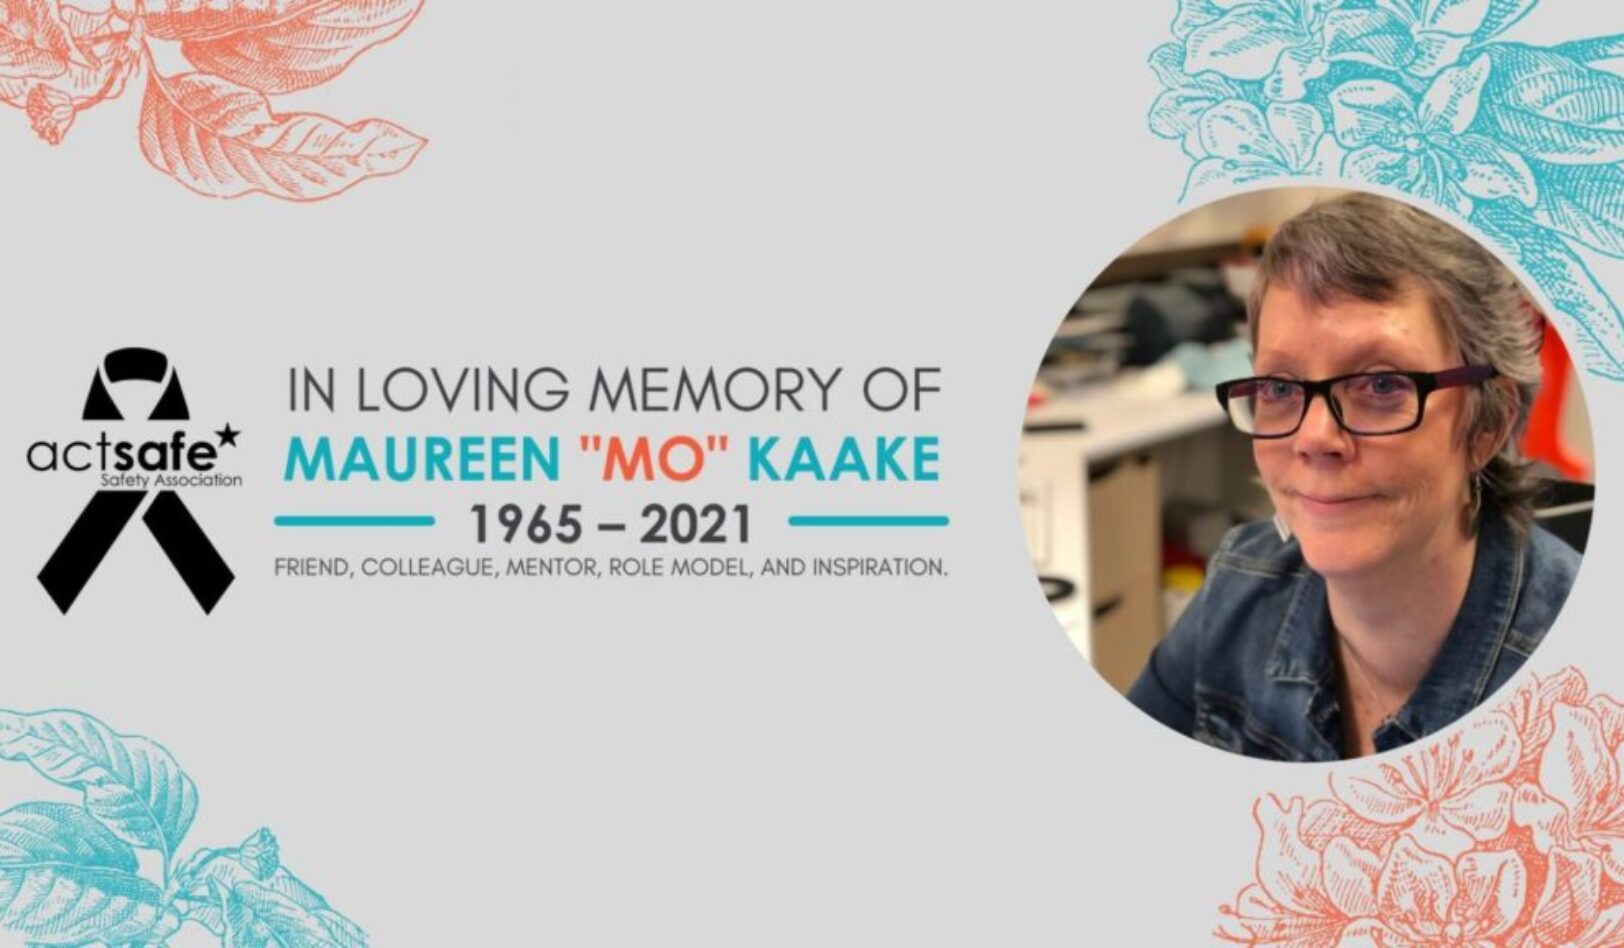 An Obituary for Maureen “Mo” Kaake